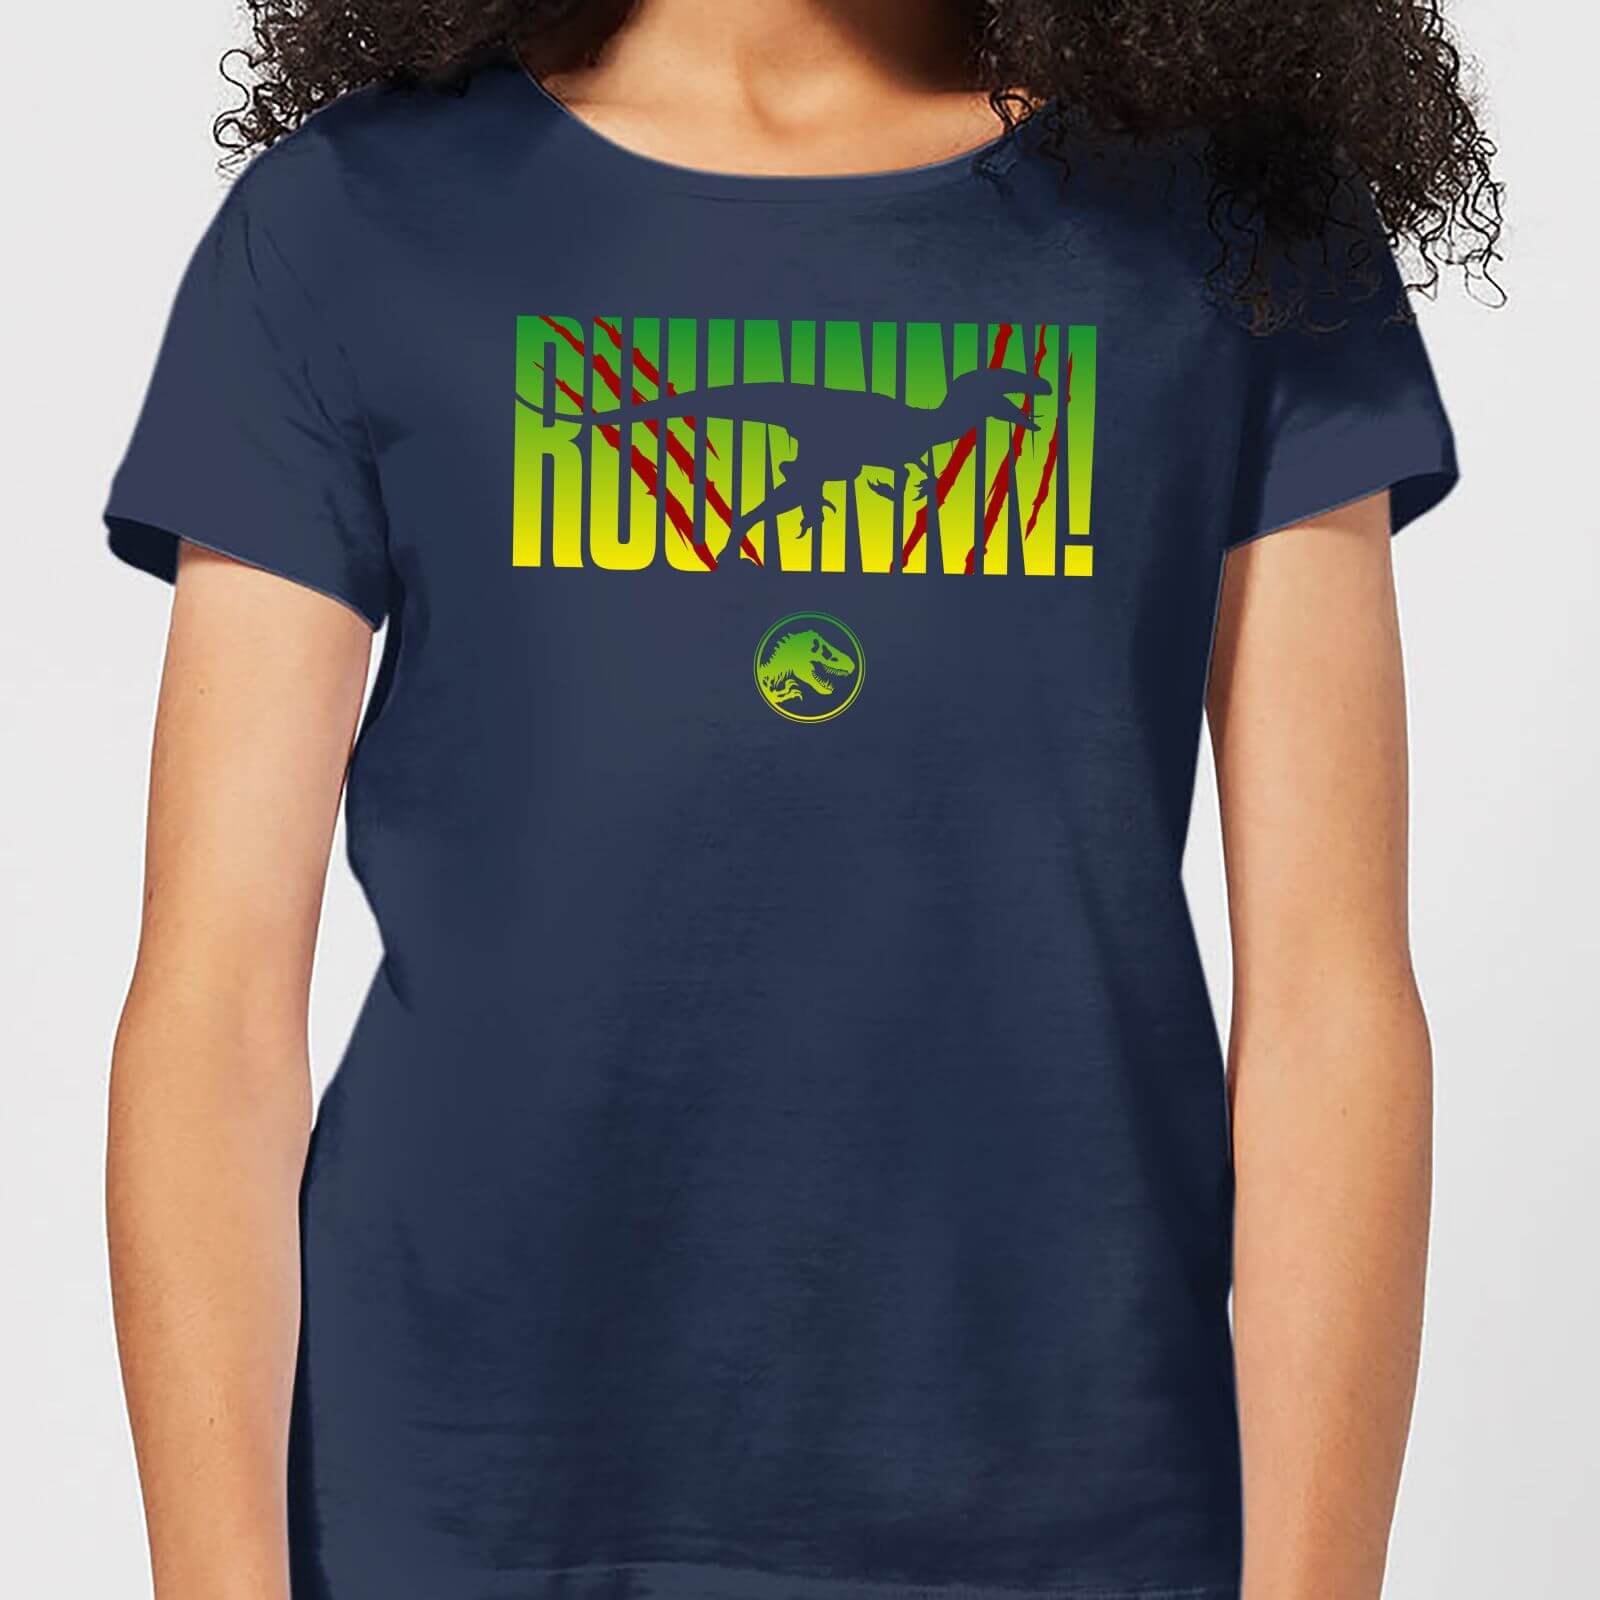 Jurassic Park Run! Women's T-Shirt - Navy - S - Navy